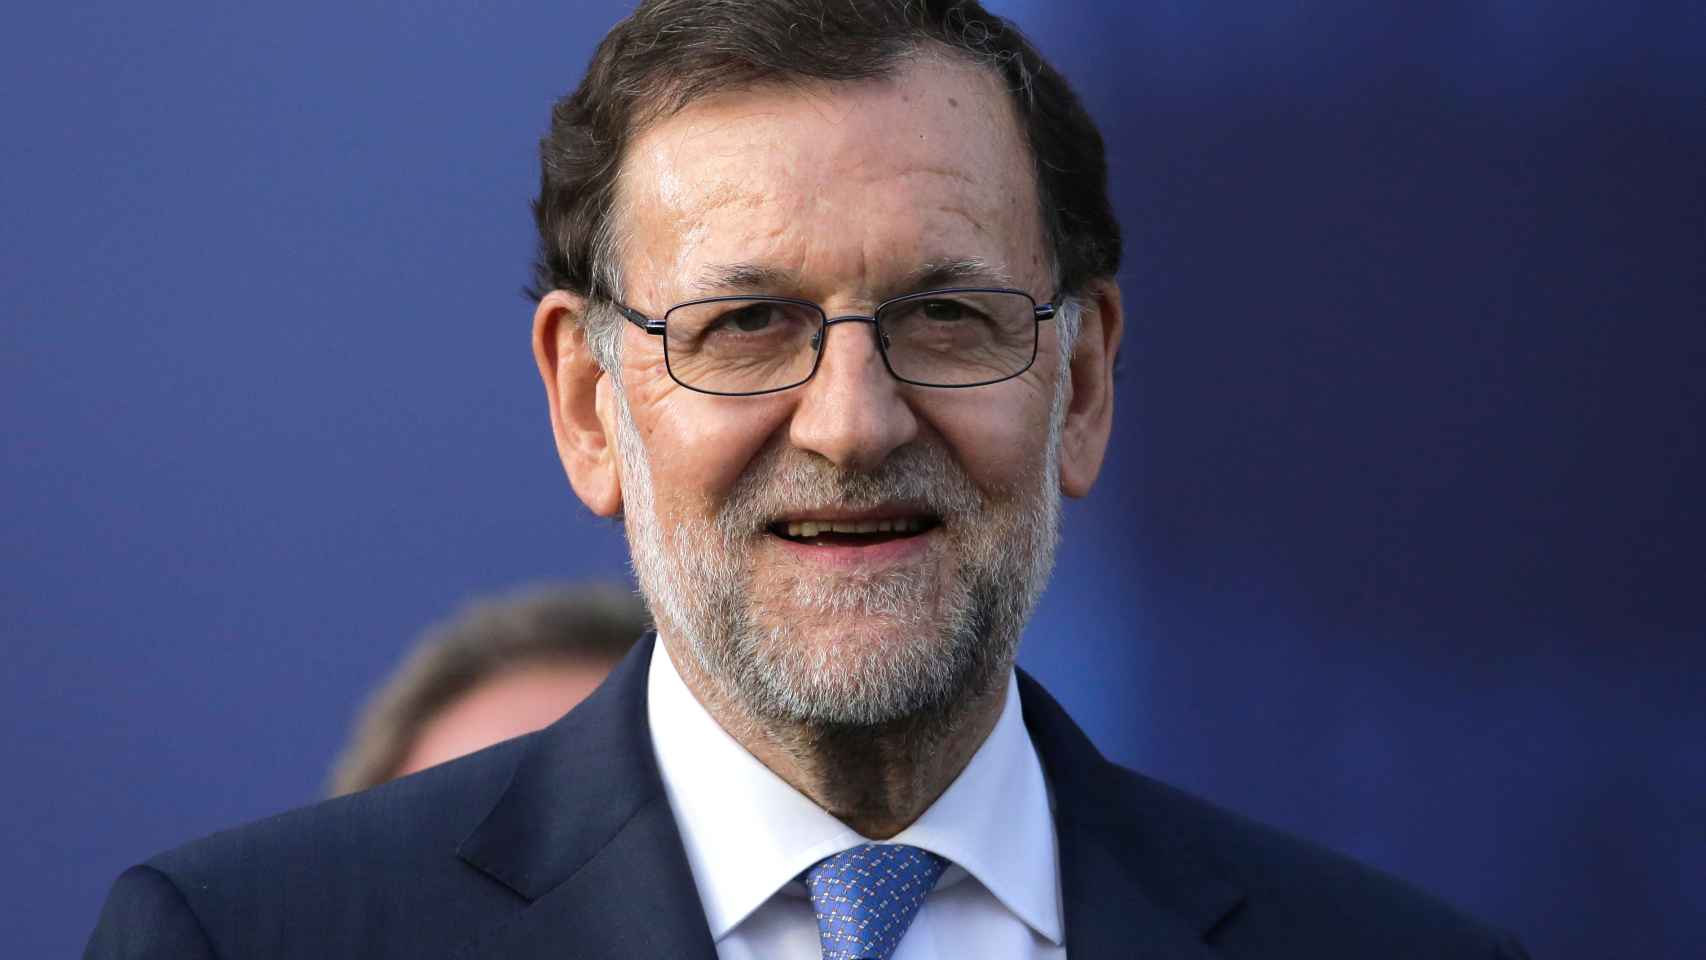 Un sonriente Mariano Rajoy que muestra con orgullo si pelo bicolor.